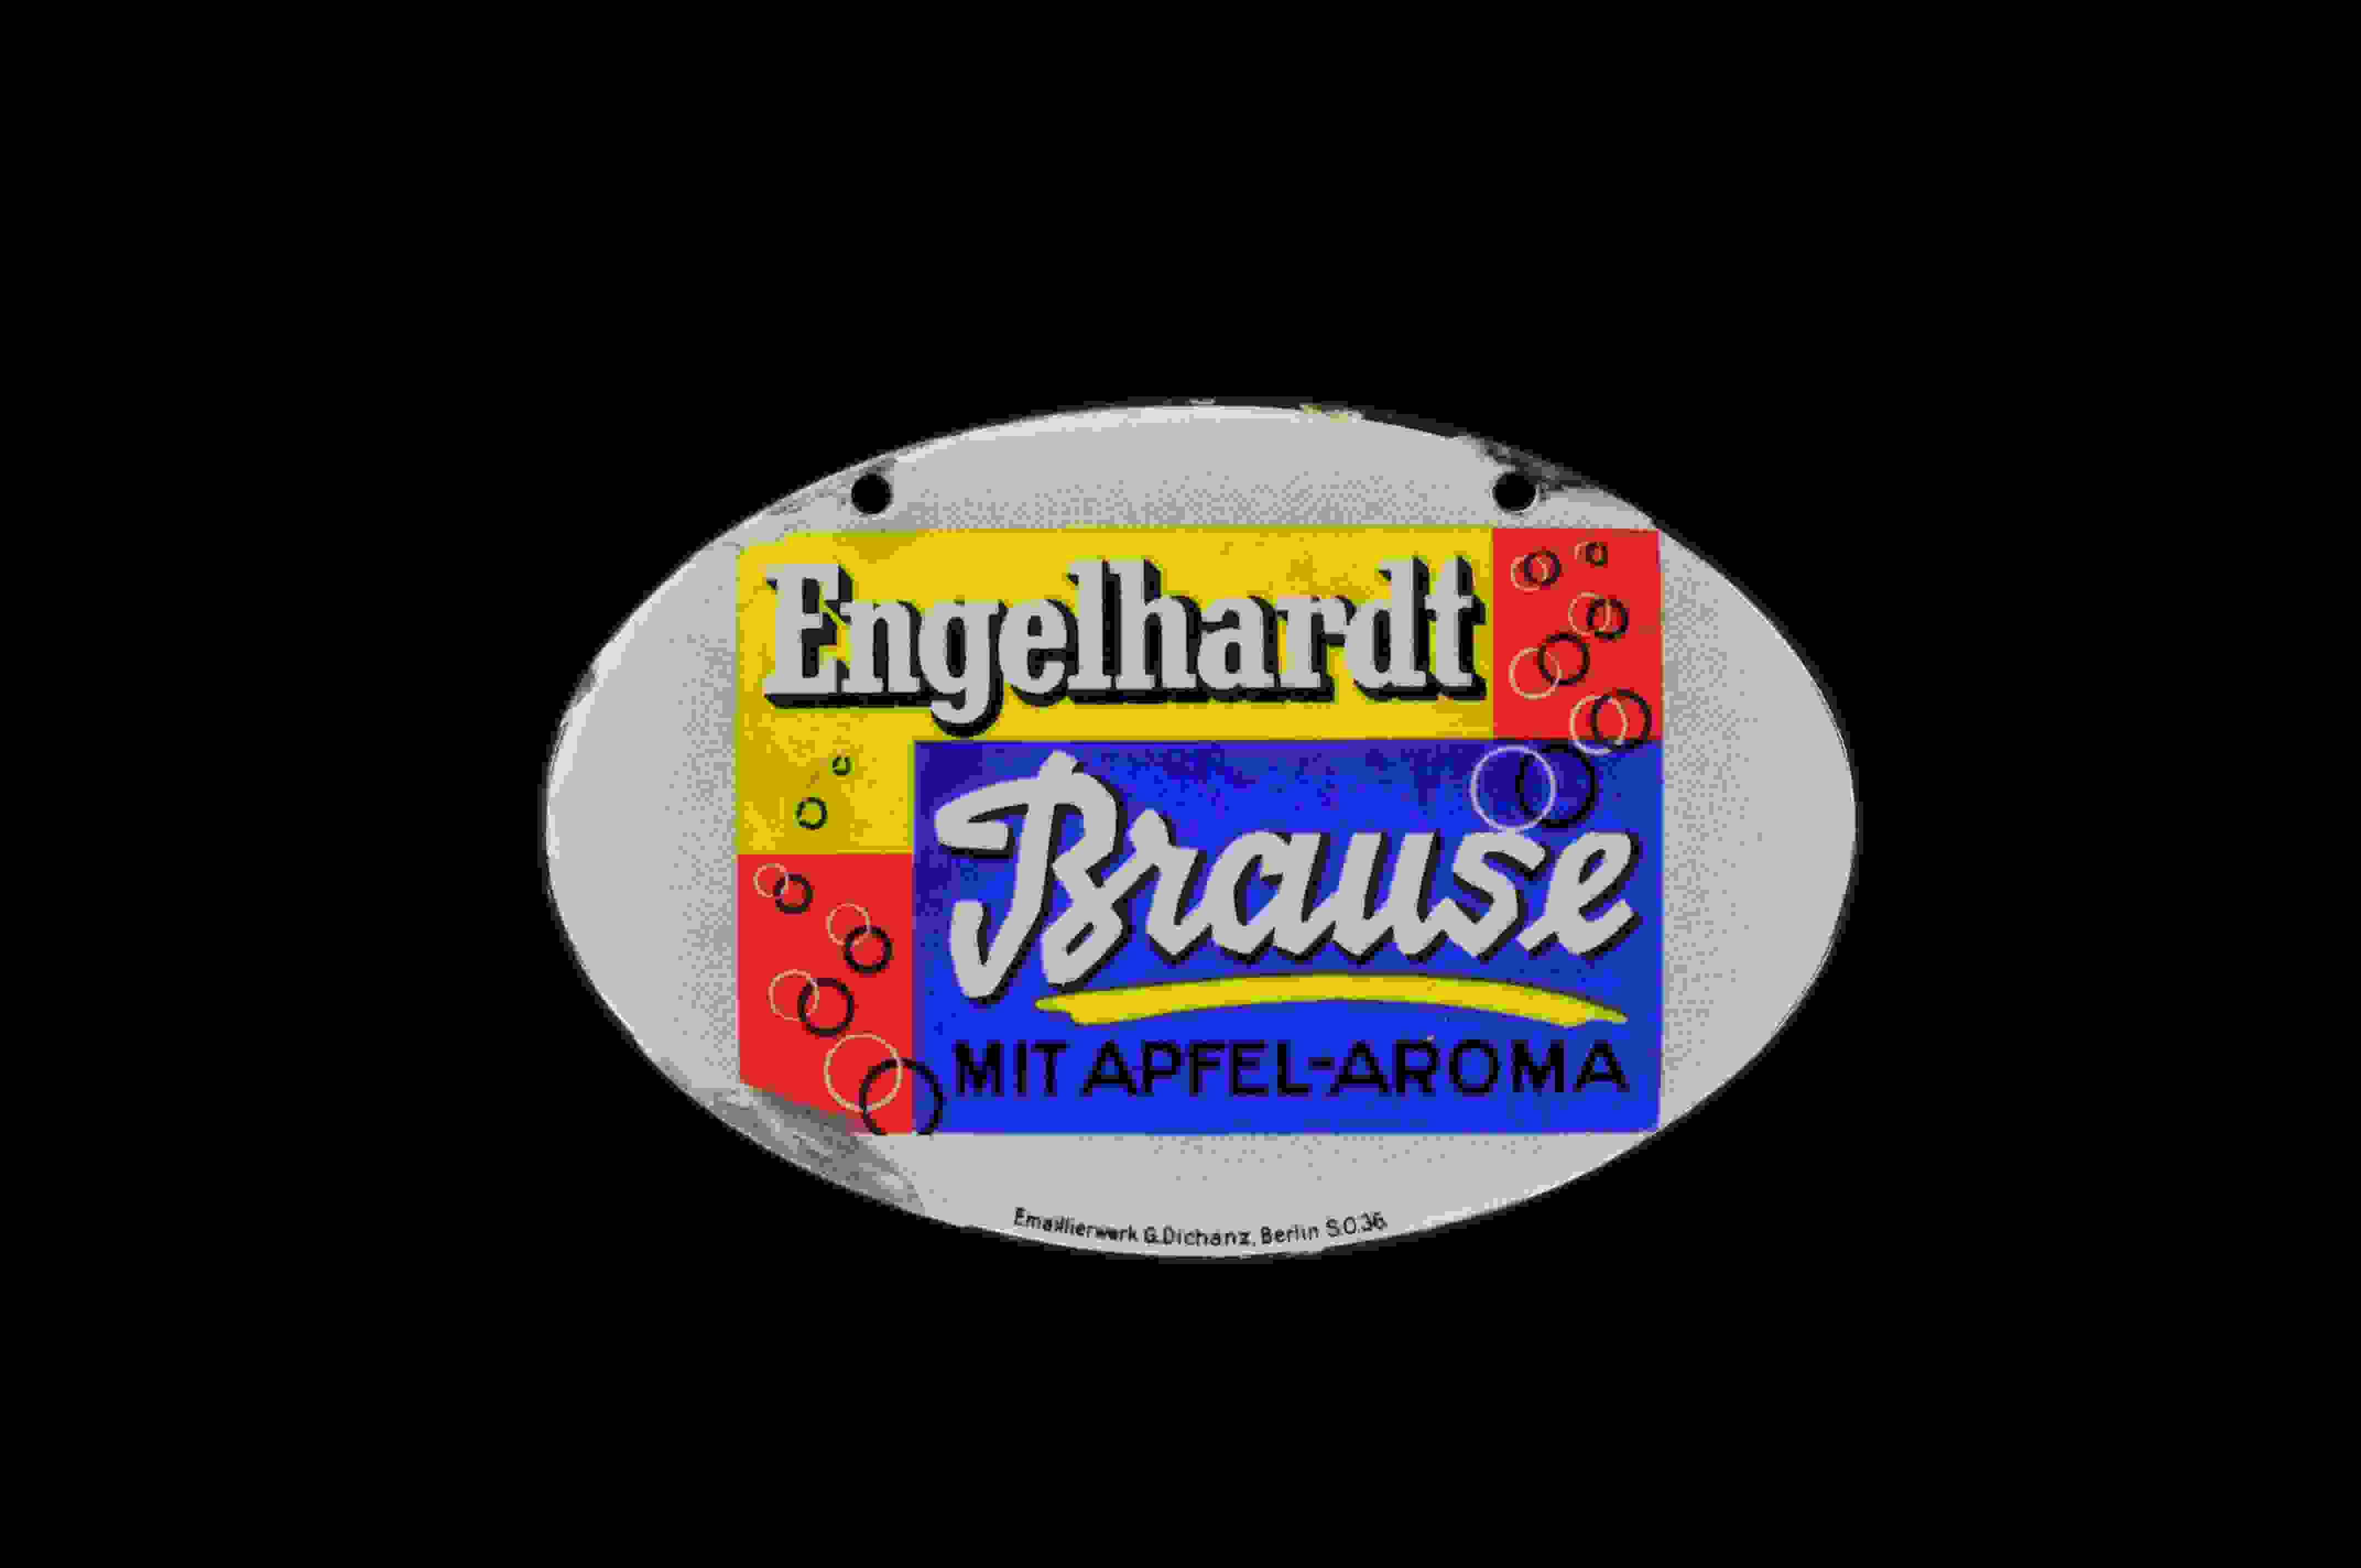 Engelhardt Brause 